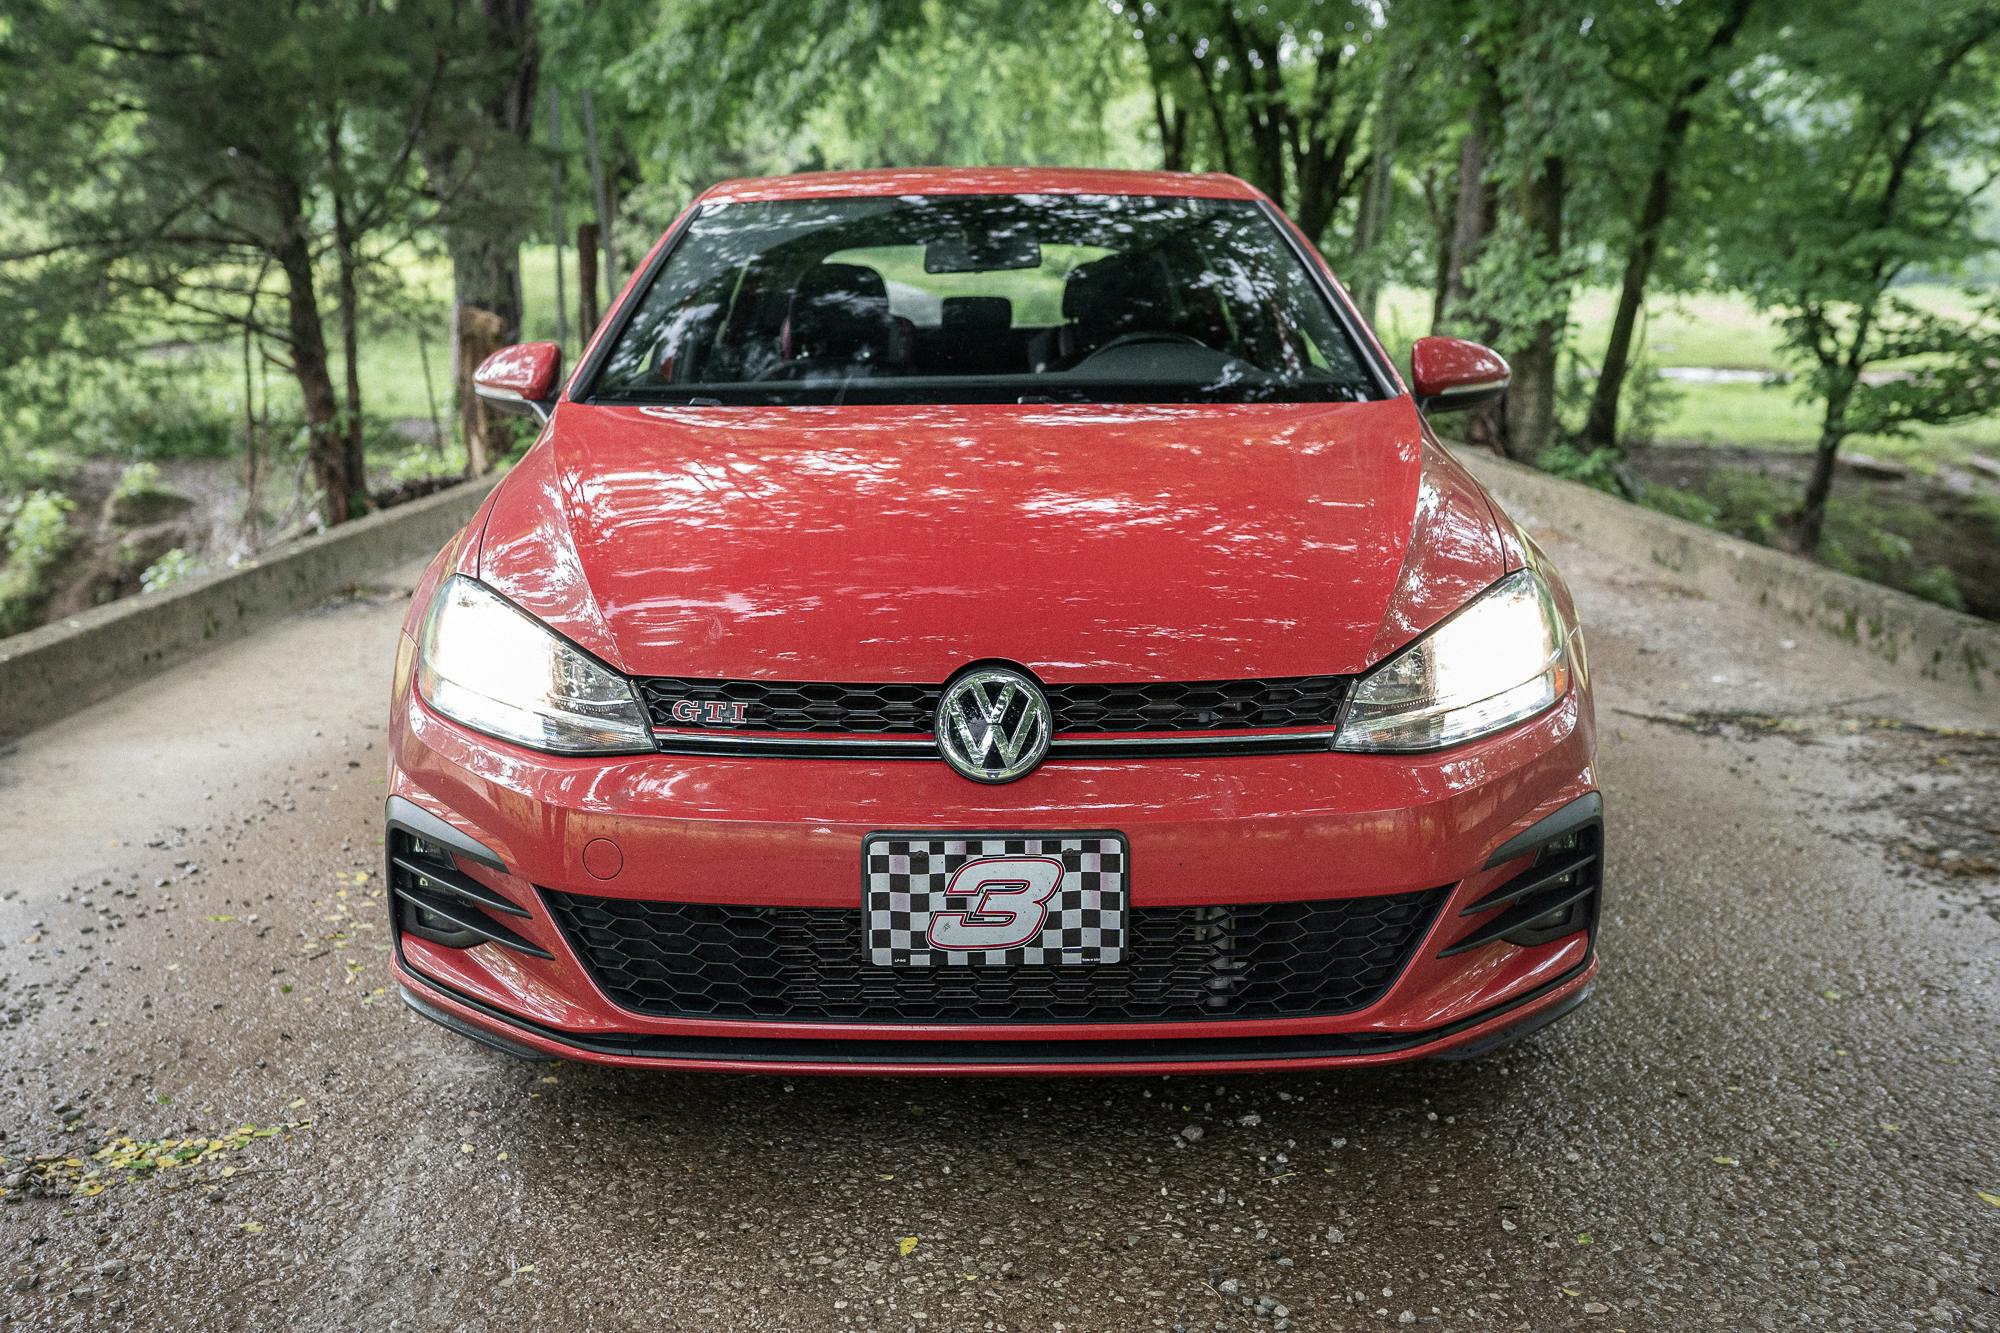 VW GTI front